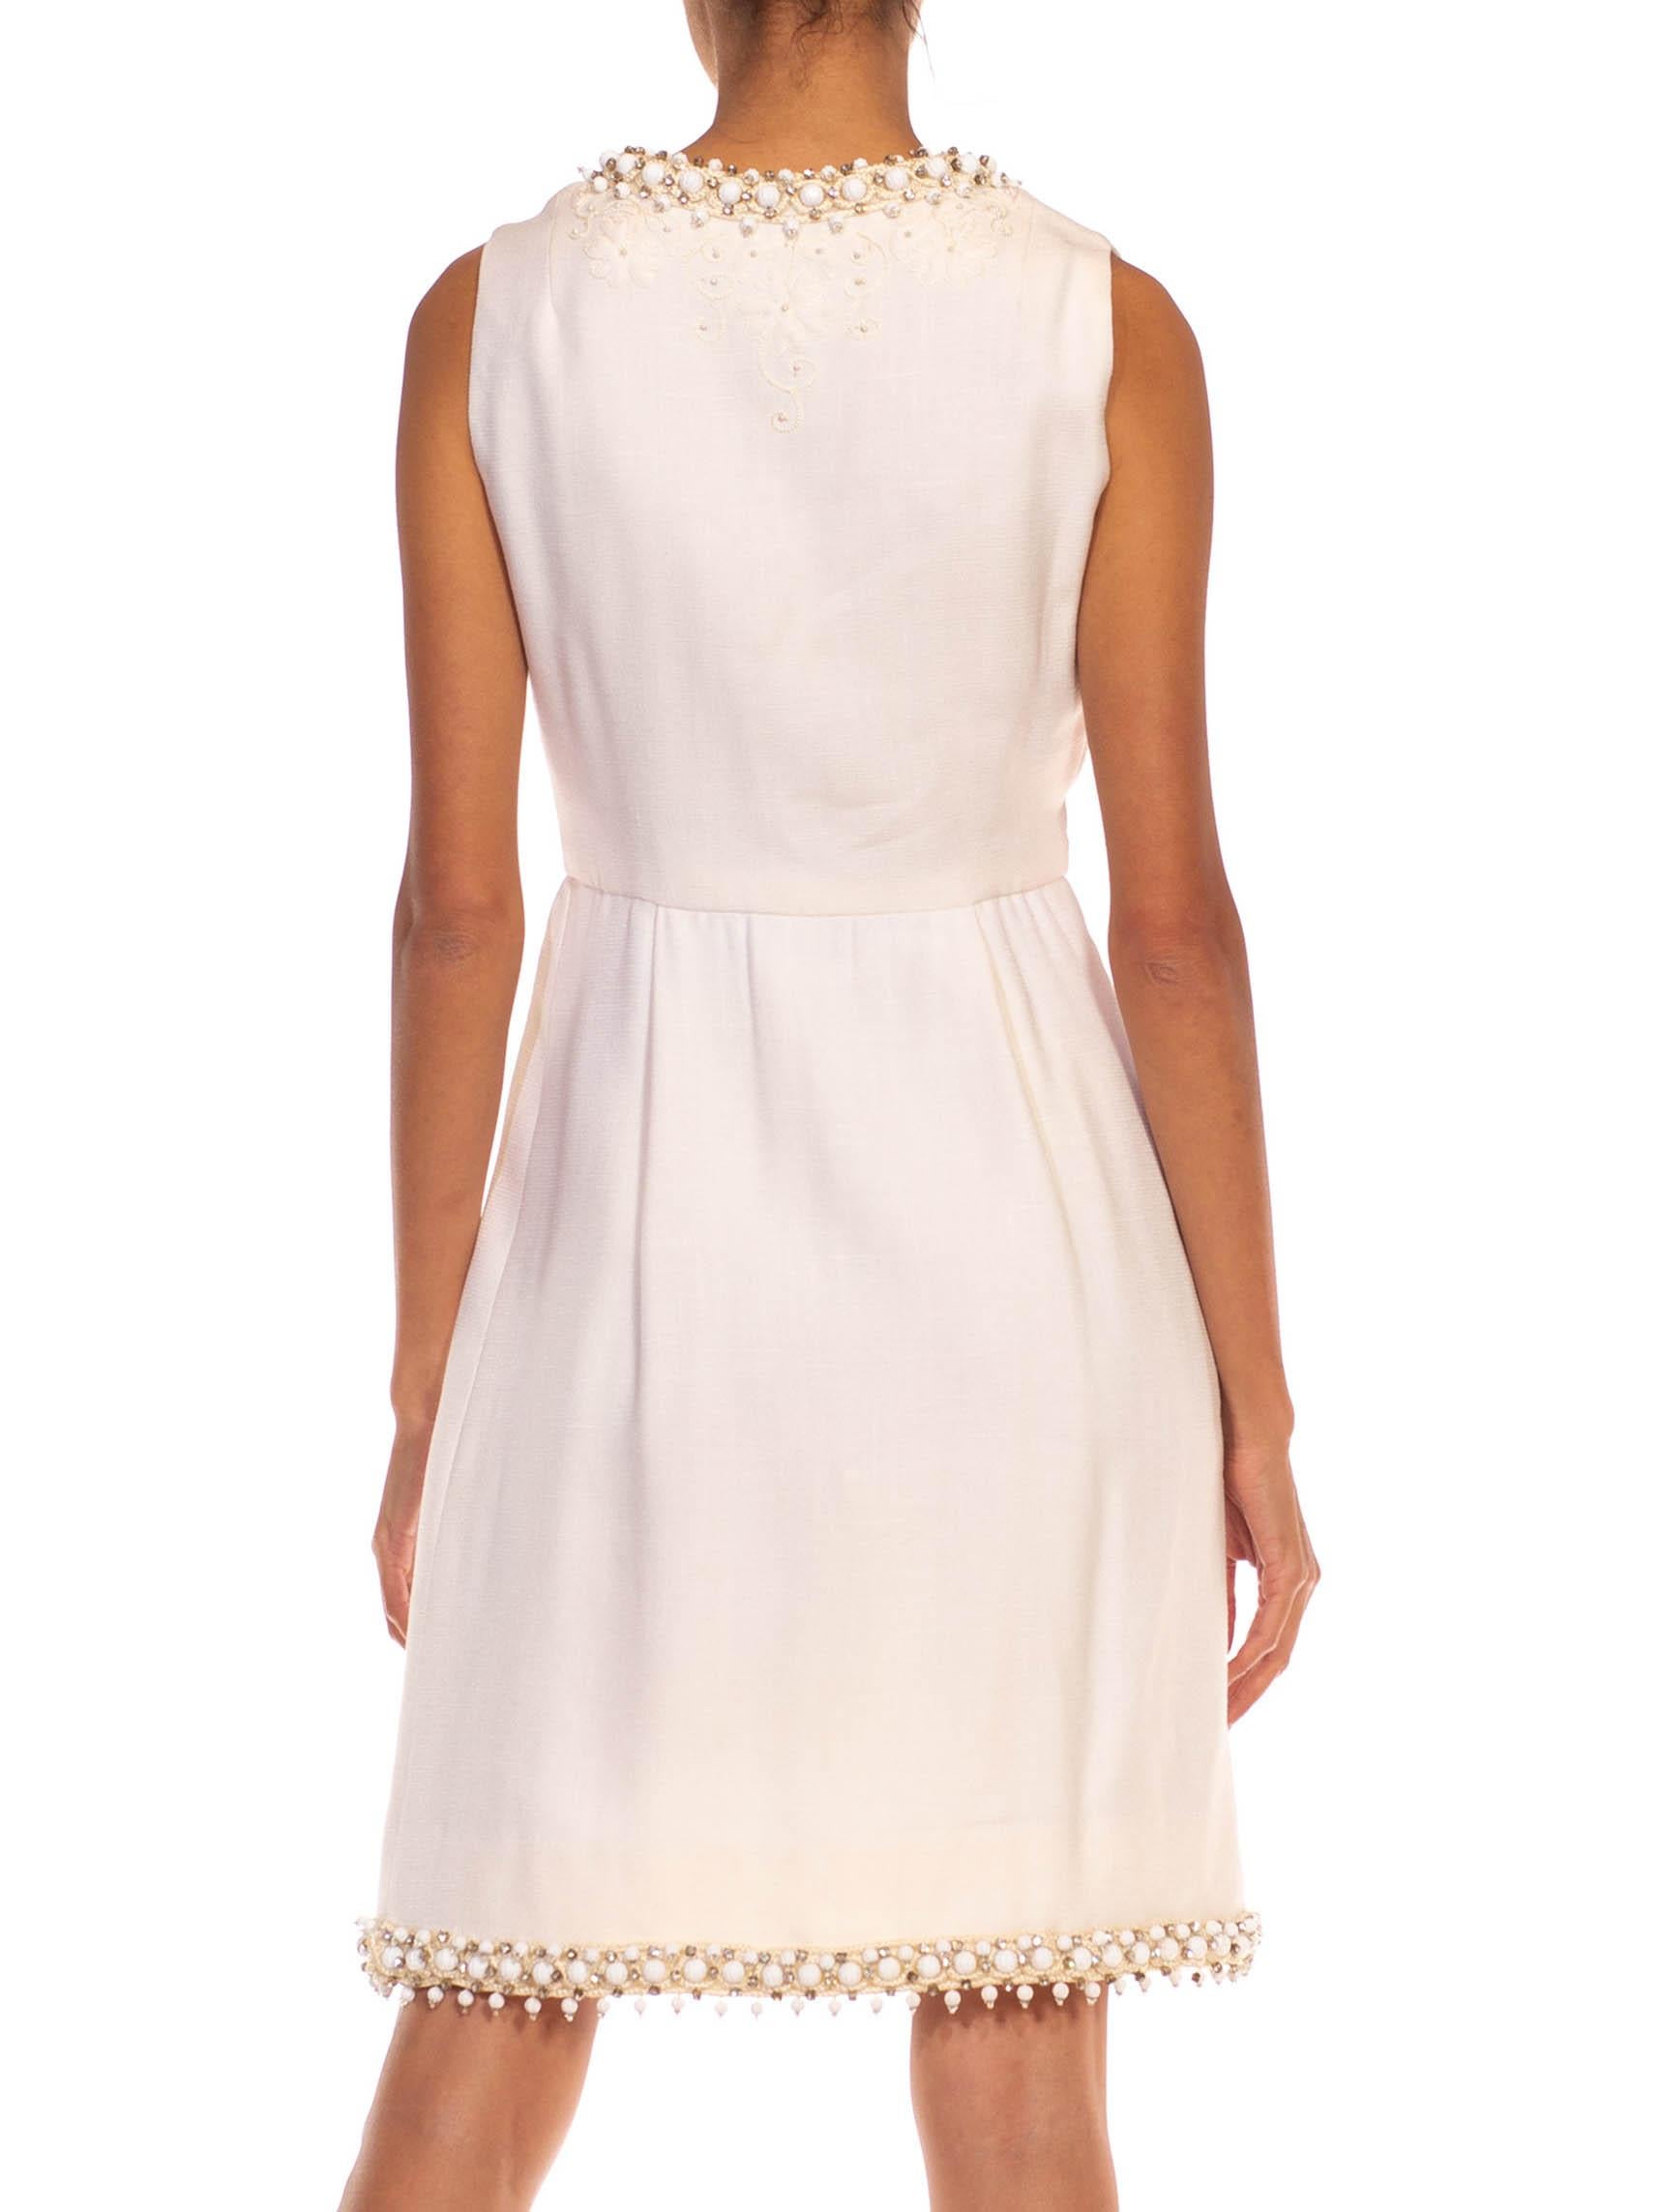 1960S OSCAR DE LA RENTA White Wool Blend Plunging V Neck Mod Dress With Crystals For Sale 6